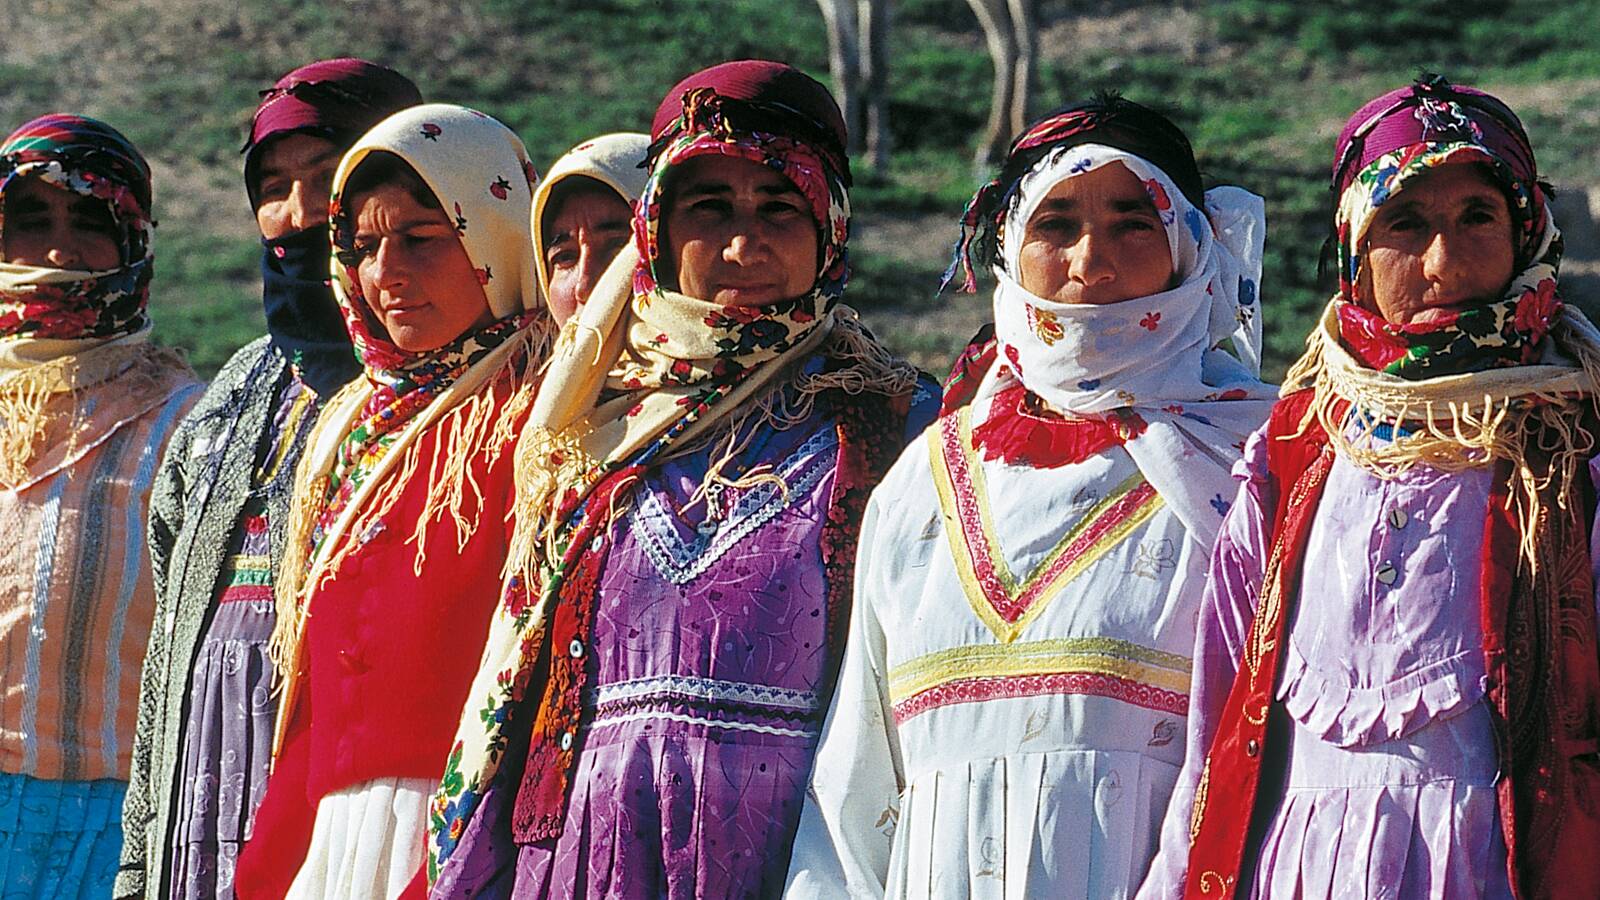 لباس محلی مردمان استان اردبیل